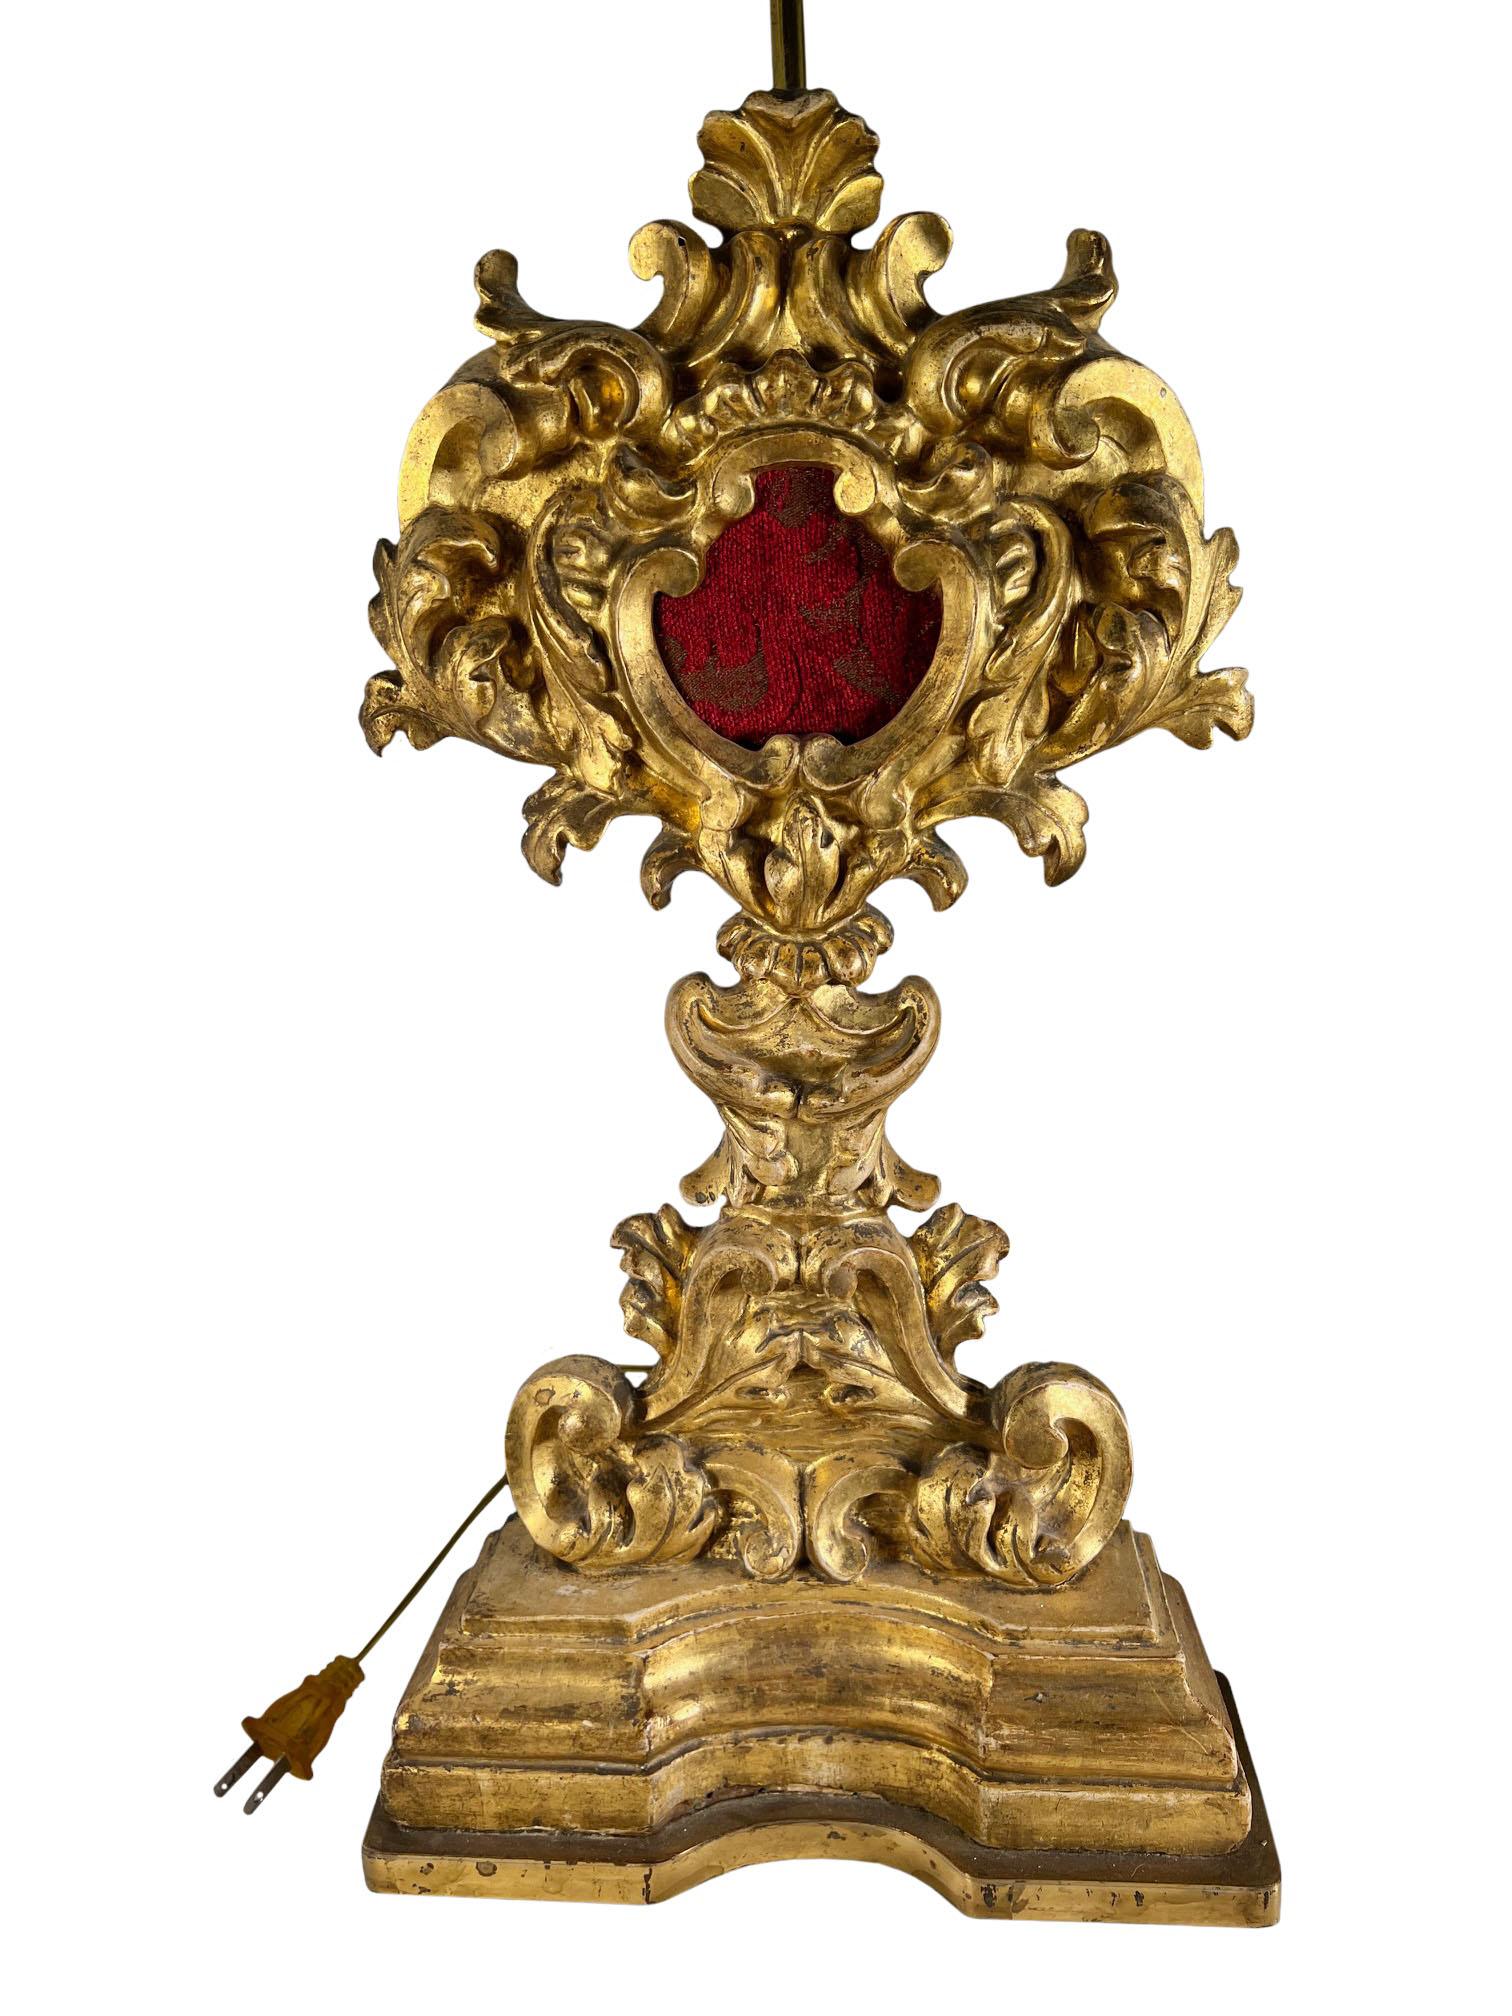 Italienische Reliquienschreine, umgeben von geschnitztem und vergoldetem Rokoko-Holz mit Bronzesockeln.  Zu einem späteren Zeitpunkt in Lampen umgewandelt. CIRCA 1780 bis 1820. Der Reliquienschrein ist nur siebzehneinhalb Zentimeter hoch.  